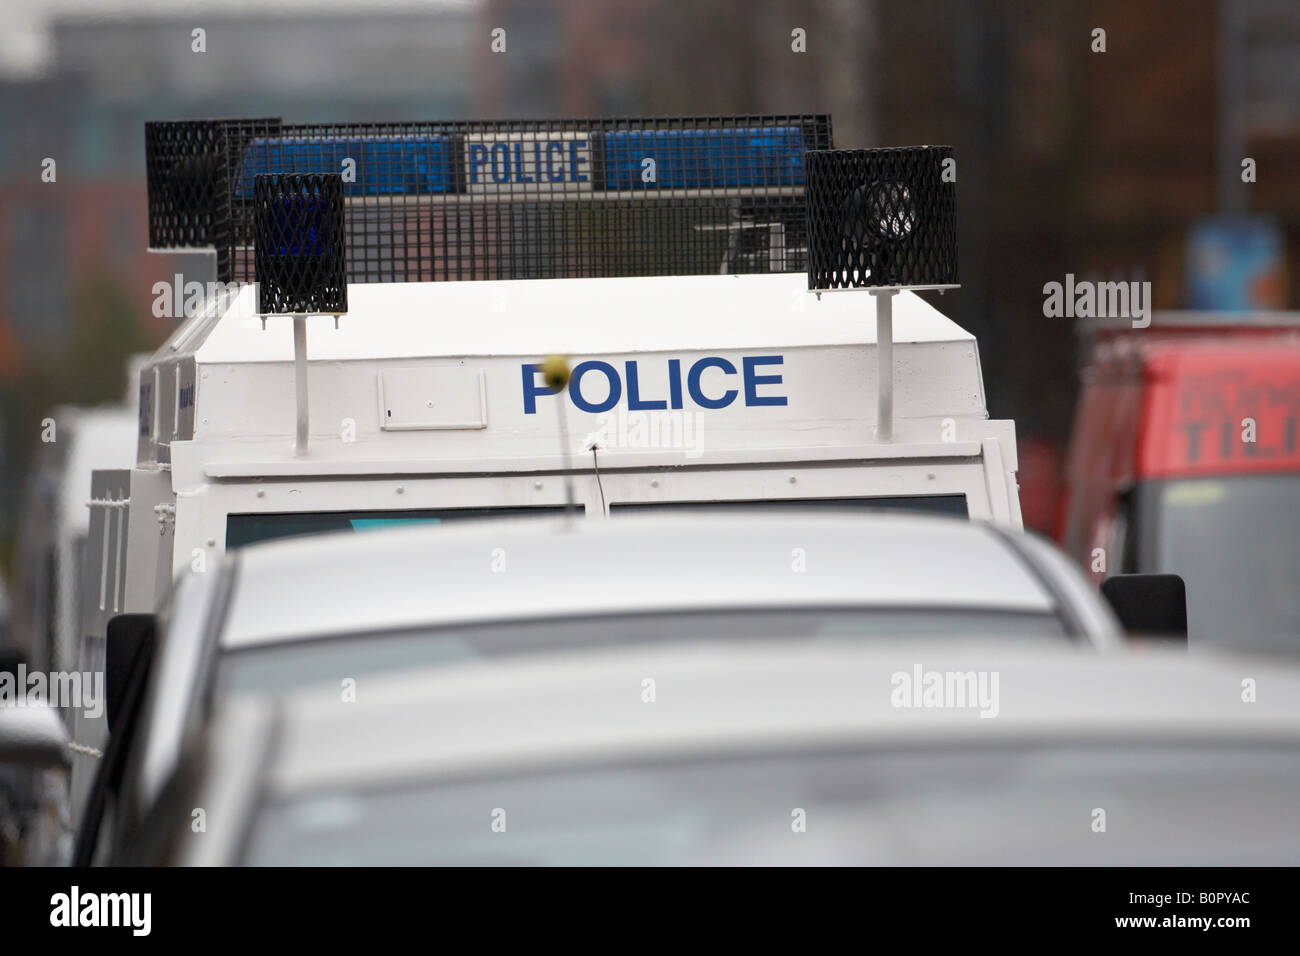 Service de police blindée PSNI Irlande du Nord landrover coincé dans le trafic pendant embouteillage Banque D'Images